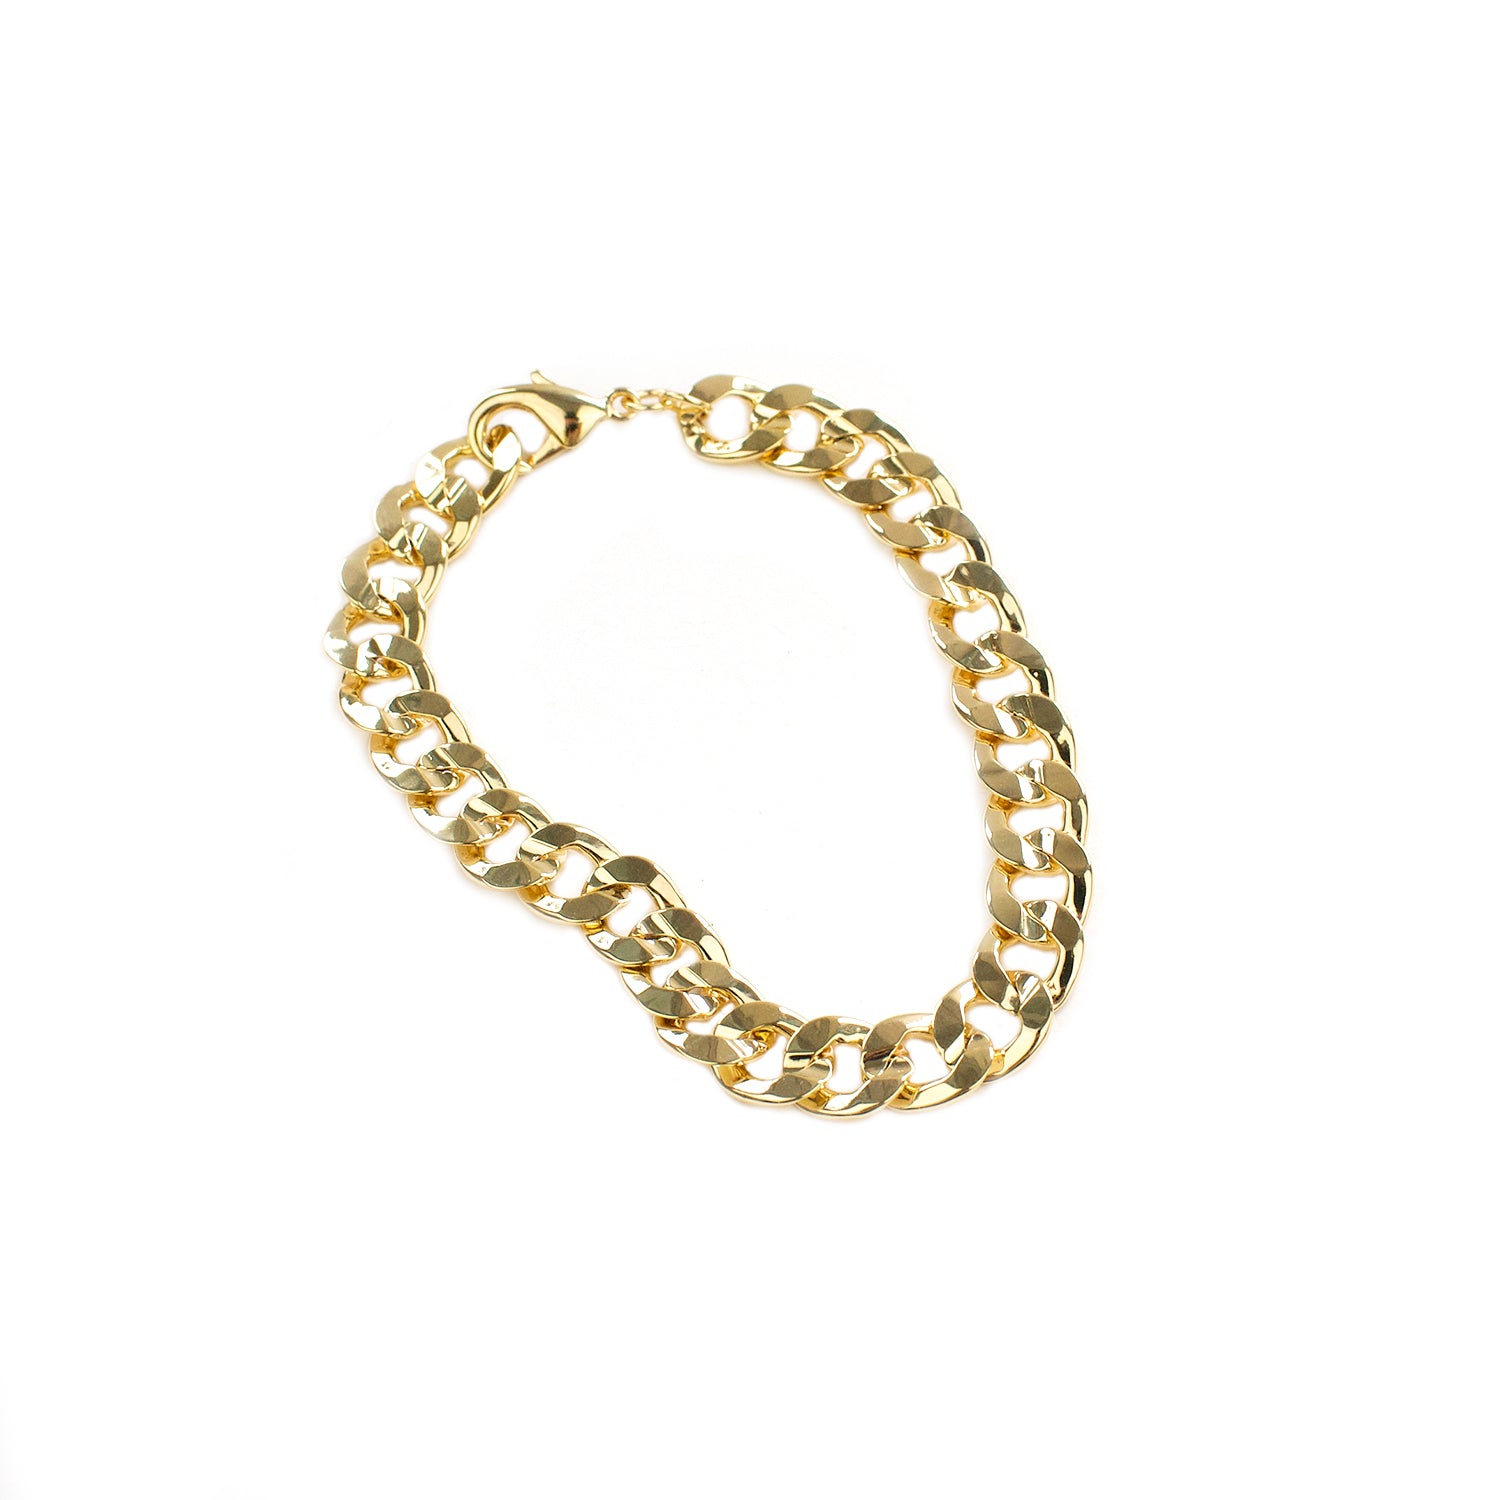 7 1/2" wide cuban link bracelet